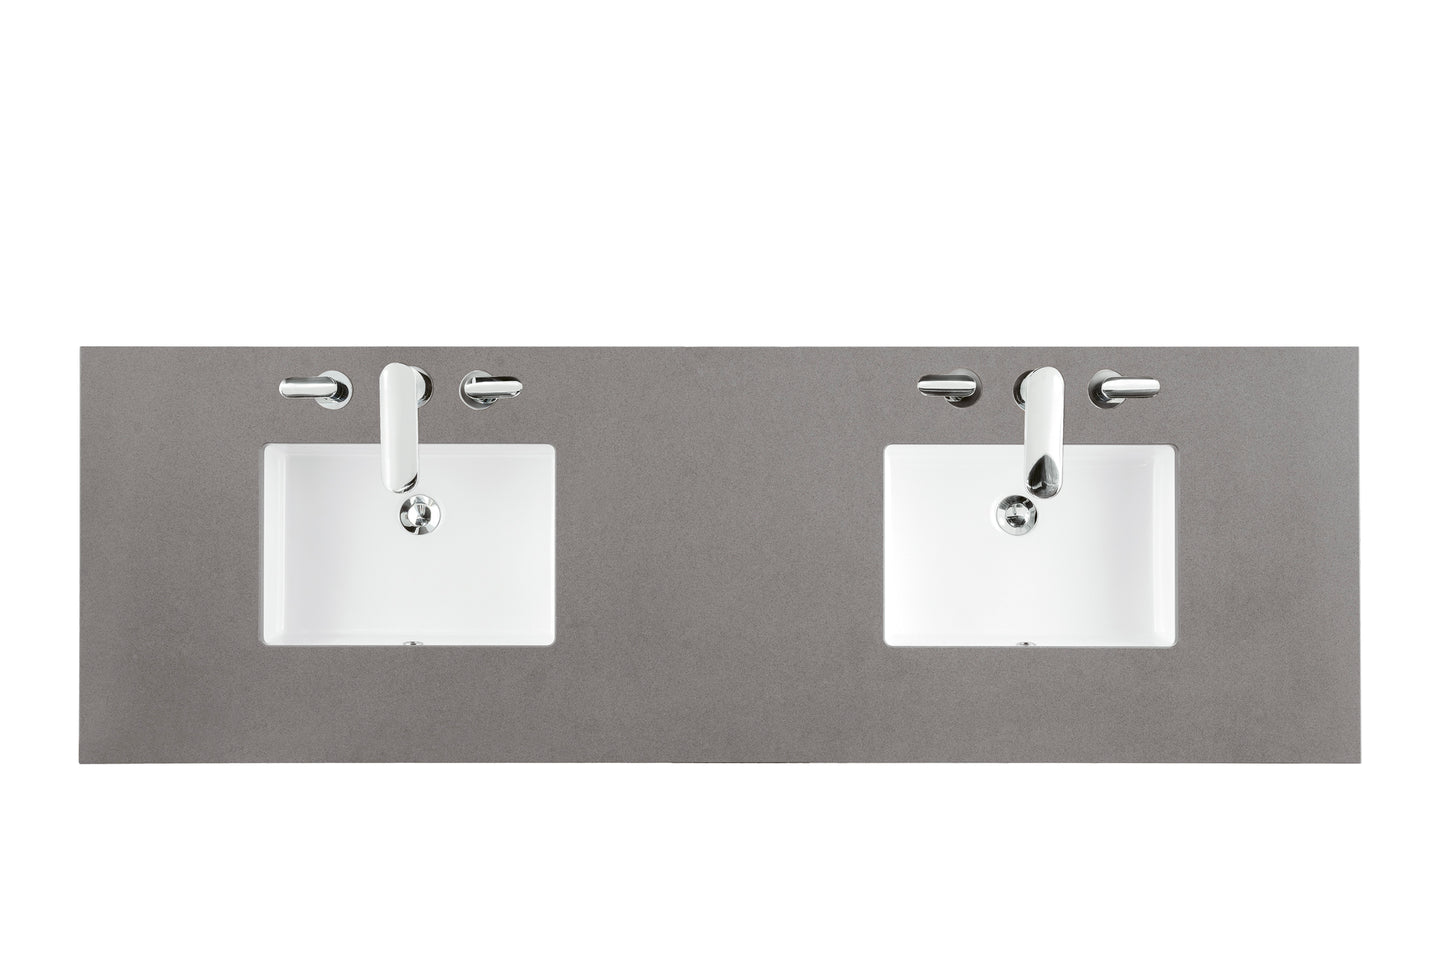 James Martin De Soto 72" Bright White Double Vanity with 3 CM Countertop - Luxe Bathroom Vanities